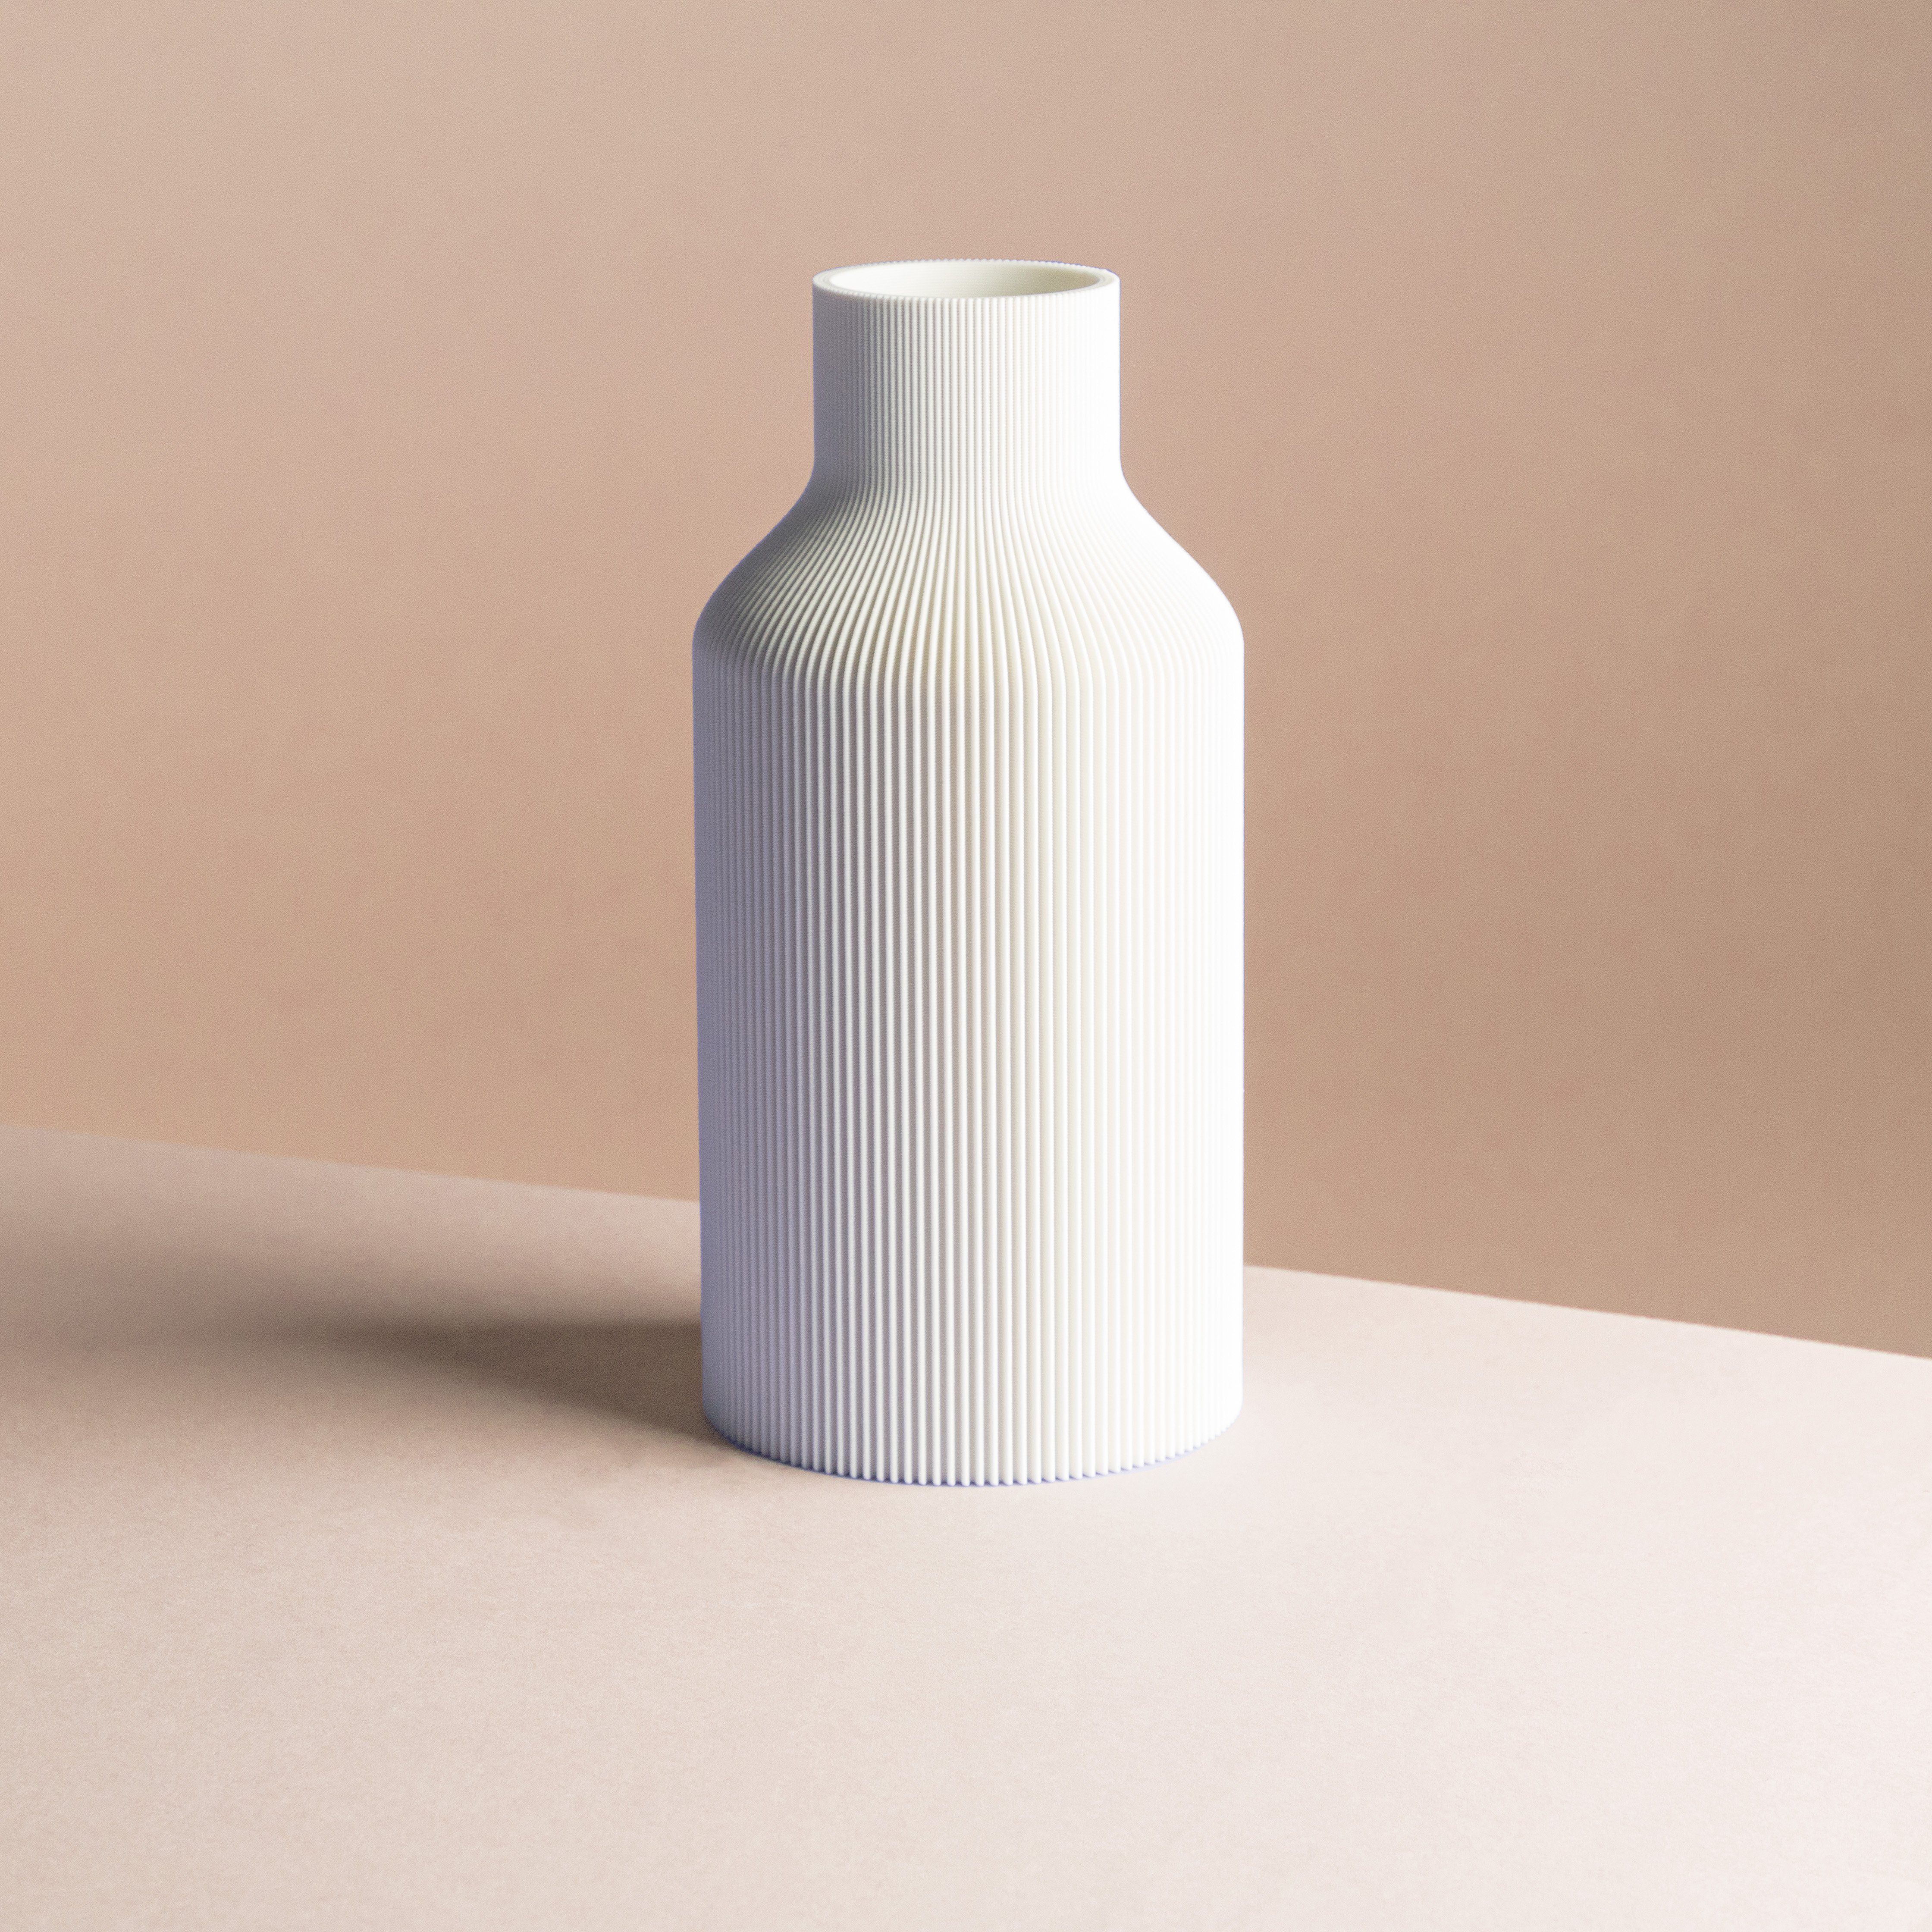 Dennismaass. Dekovase FLASCHE, 3D Druck, wundervolle Rillen-Optik, für Blumen aller Art, dekorative Vase aus dem 3D Drucker weiss